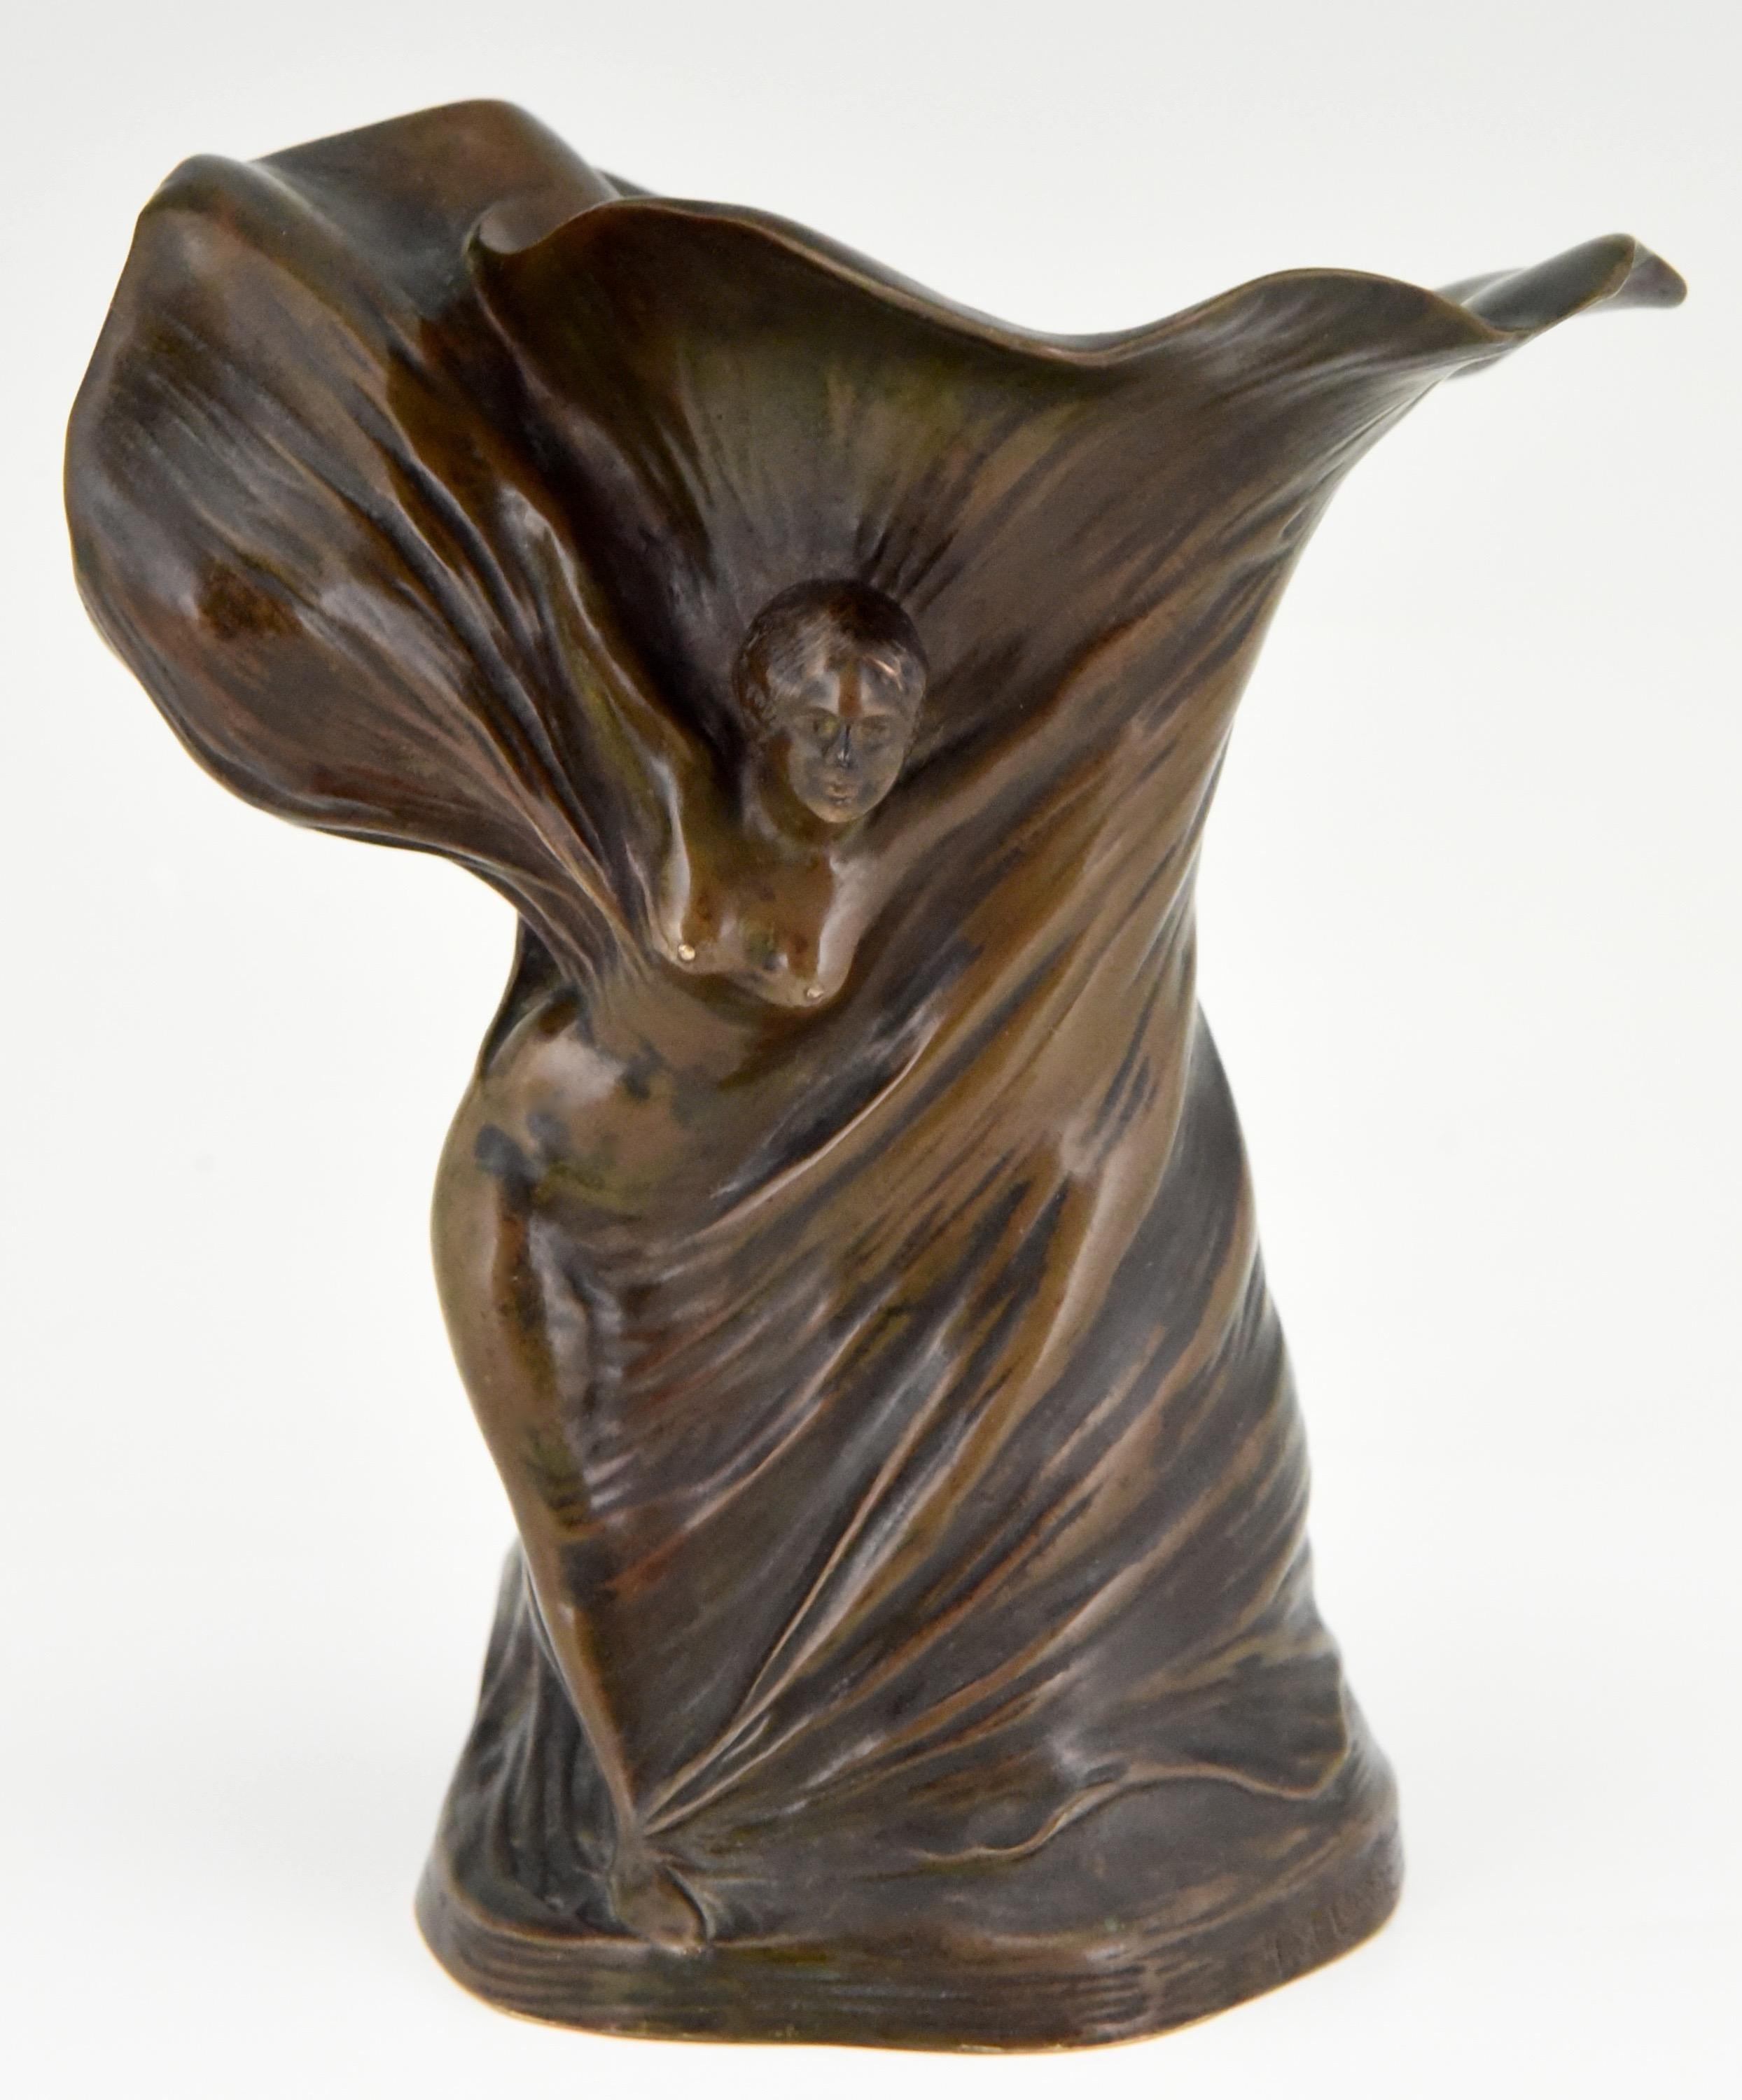 Beau vase Art Nouveau en bronze patiné représentant la célèbre danseuse Loïe Fuller. Le vase est signé par l'artiste Hans Stoltenberg Lerche (1867-1920) et porte la signature des fondateurs de Louchet:: France:: vers 1900. 

La littérature : 
Ce